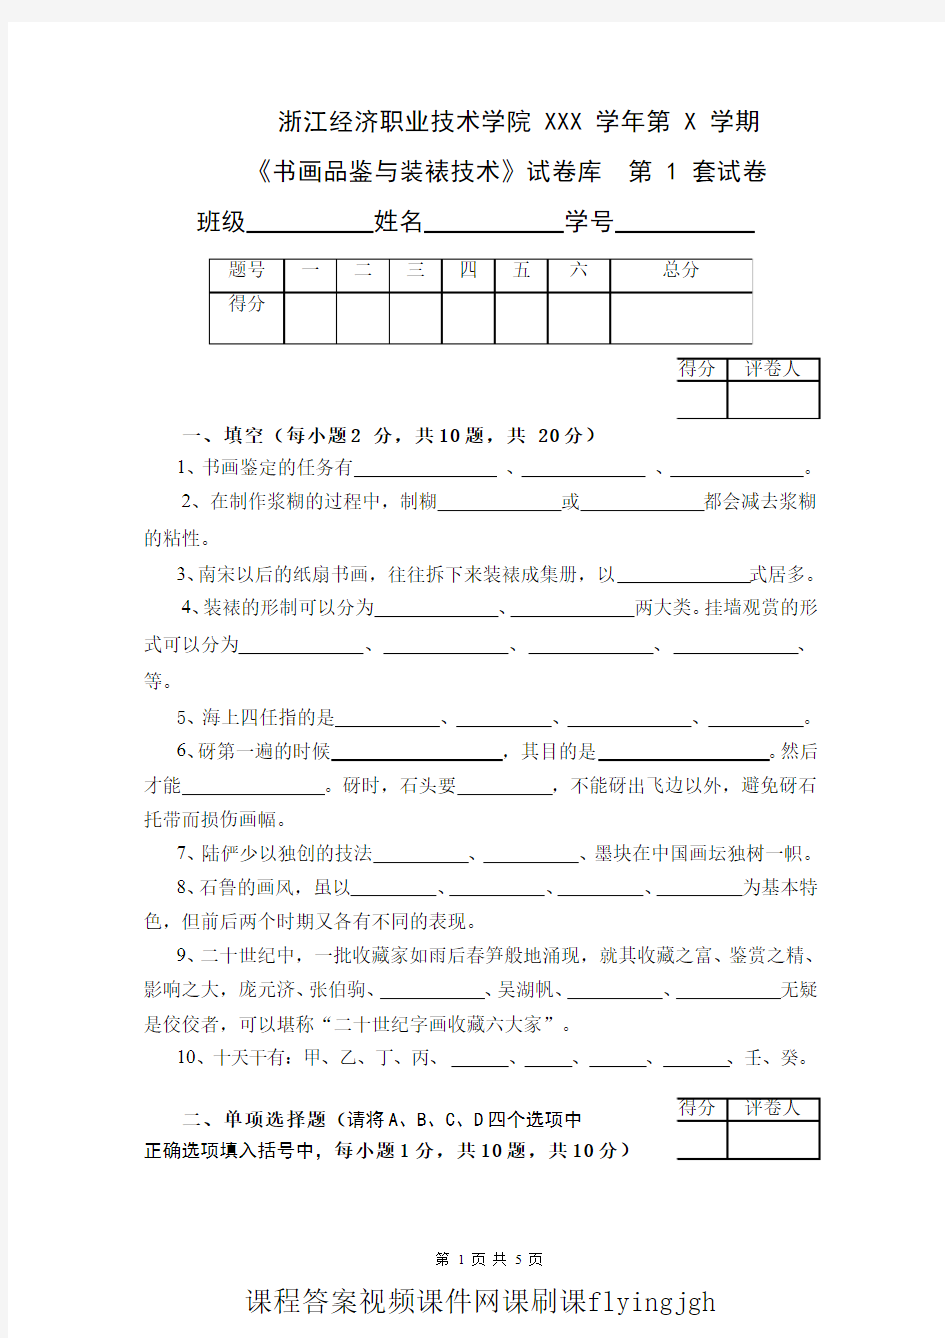 中国大学MOOC慕课爱课程(9)--《书画品鉴与装裱技术》期末考试卷第1套网课刷课